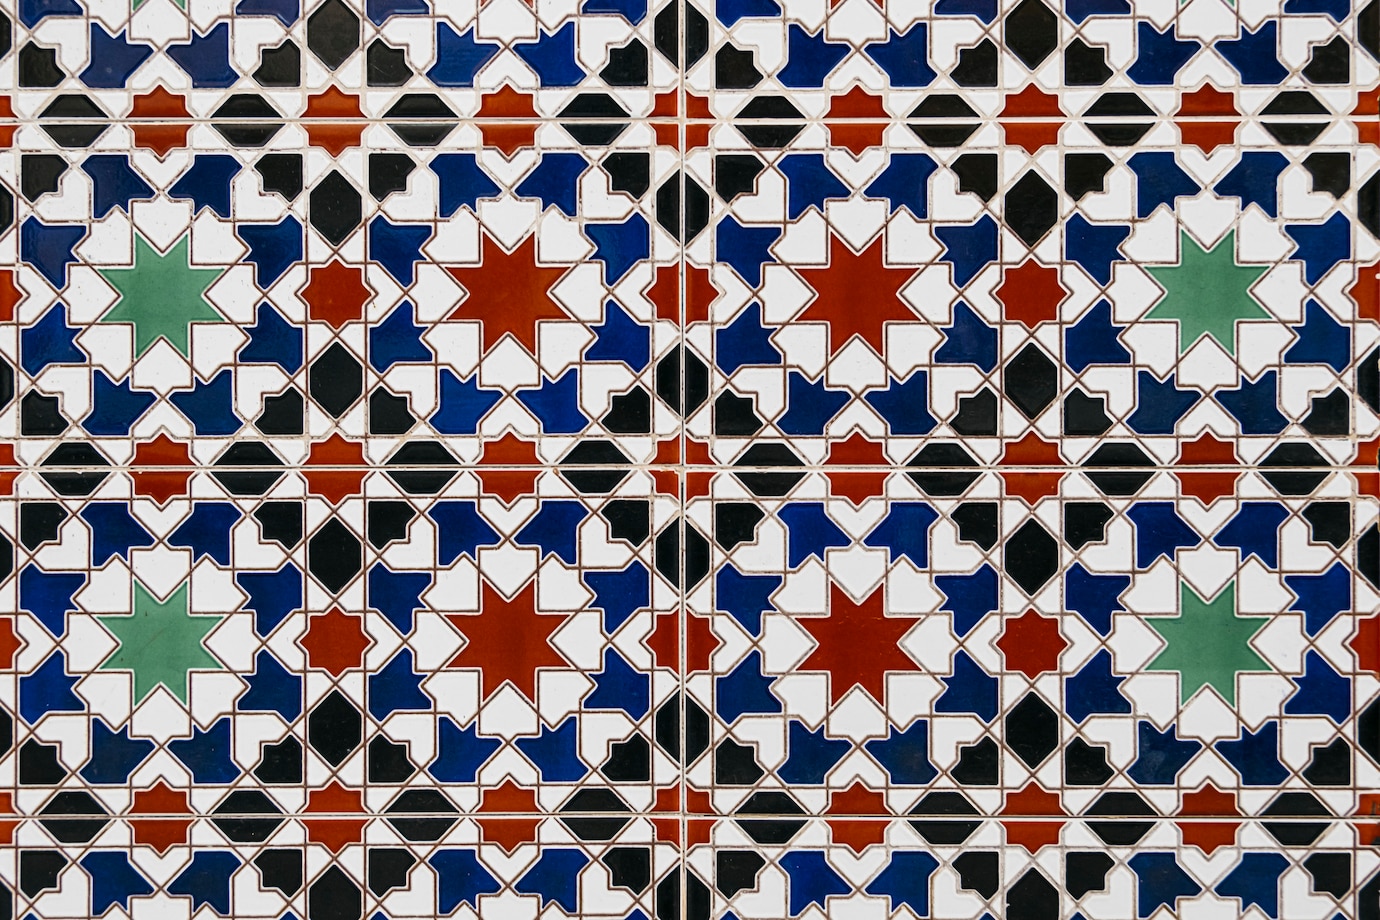 La imagen muestra unos azulejos con estrellas y otras formas geométricas de colores: verdes, azules, negras y rojas.